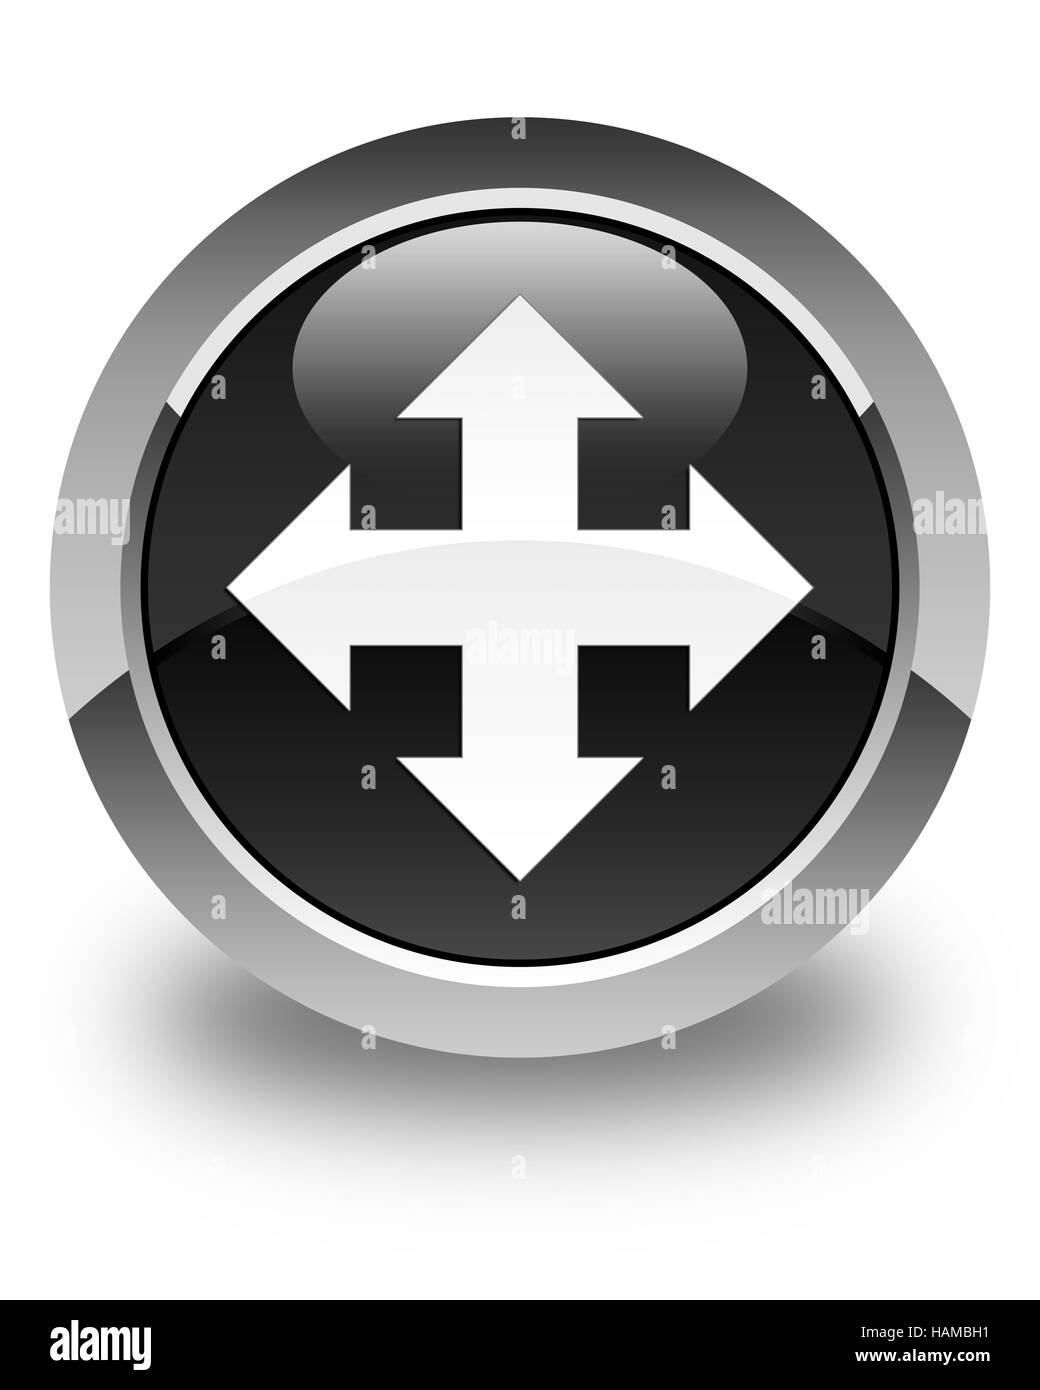 L'icône Déplacer isolé sur bouton rond noir brillant abstract illustration Banque D'Images